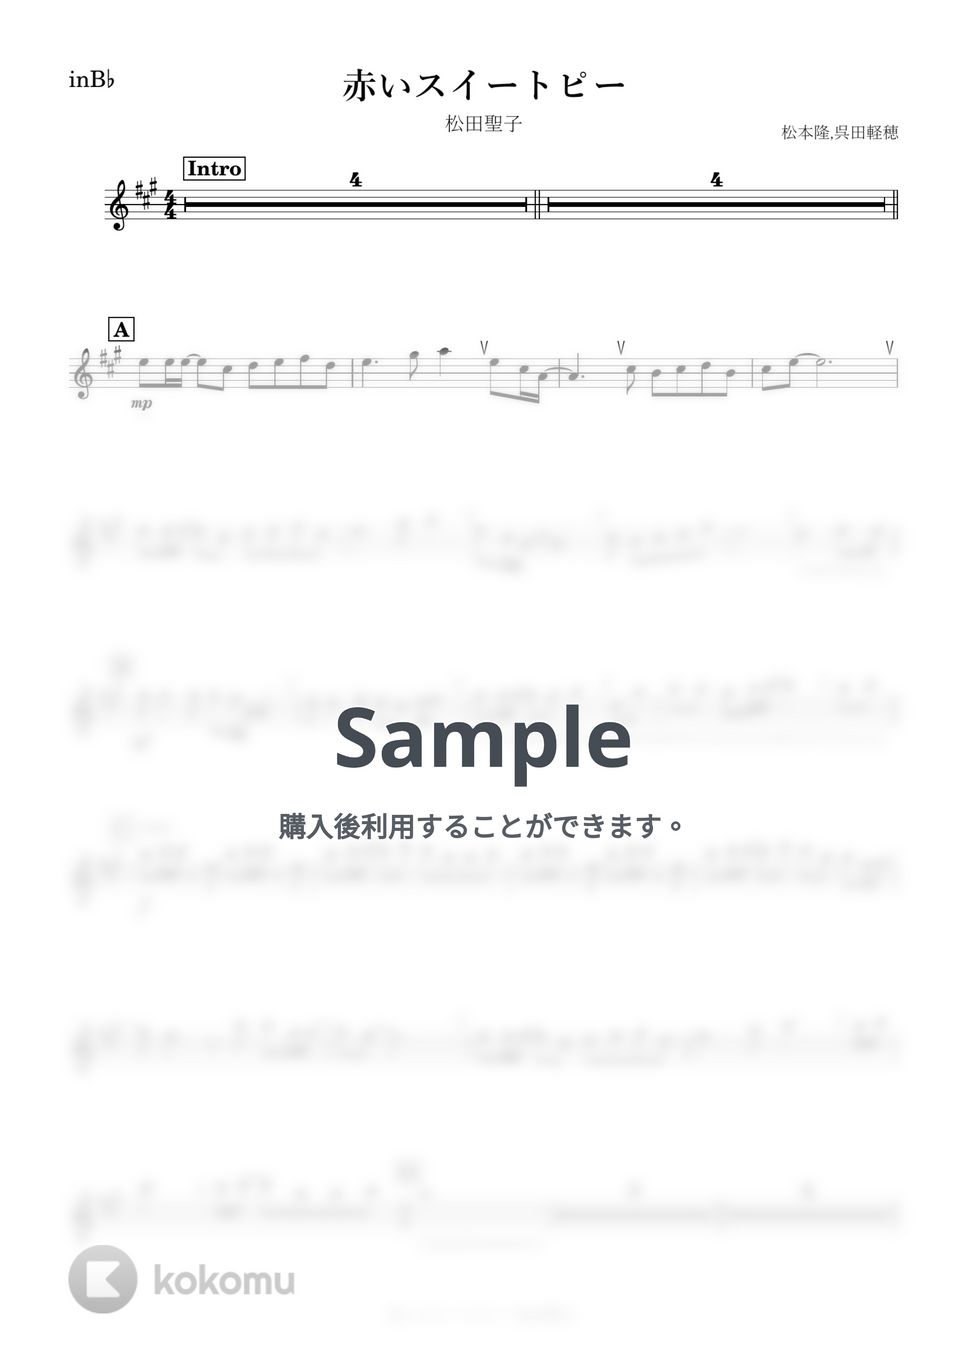 松田聖子 - 赤いスイートピー (B♭) by kanamusic